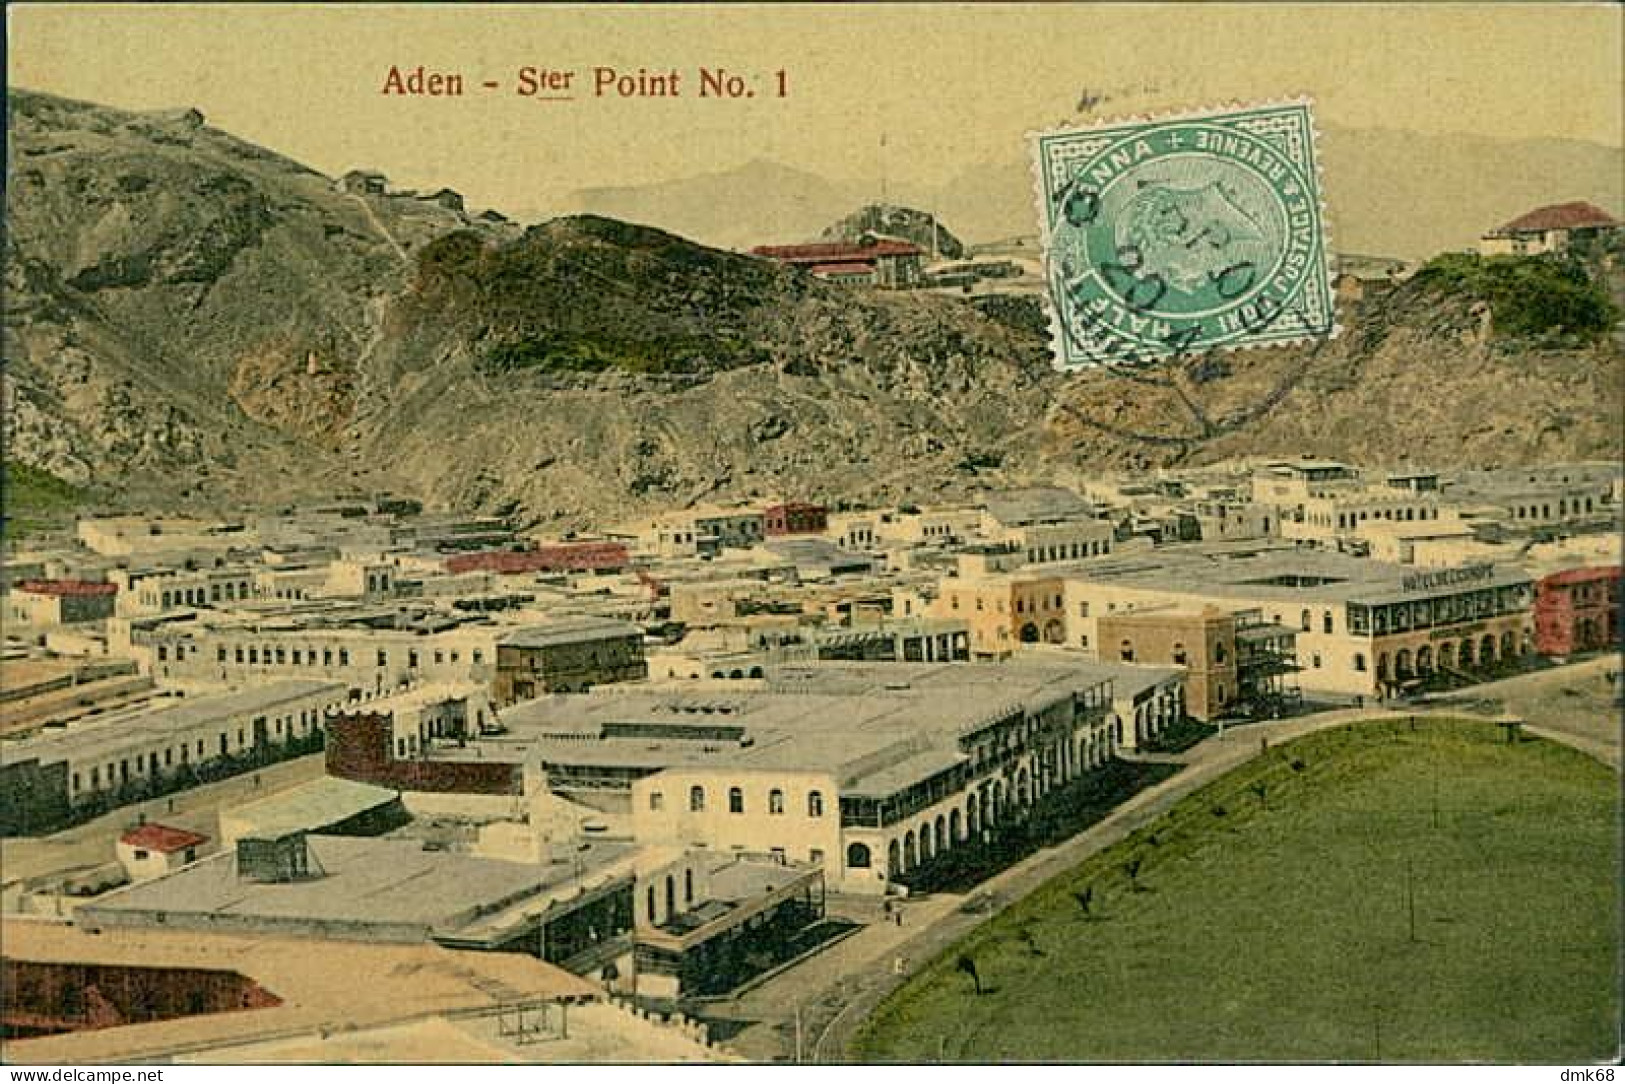 YEMEN - ADEN - S.ter POINT N. 1 - EDIT I. BENGHIAT SON - 1909 / STAMP / POSTMARK  (18400) - Yemen